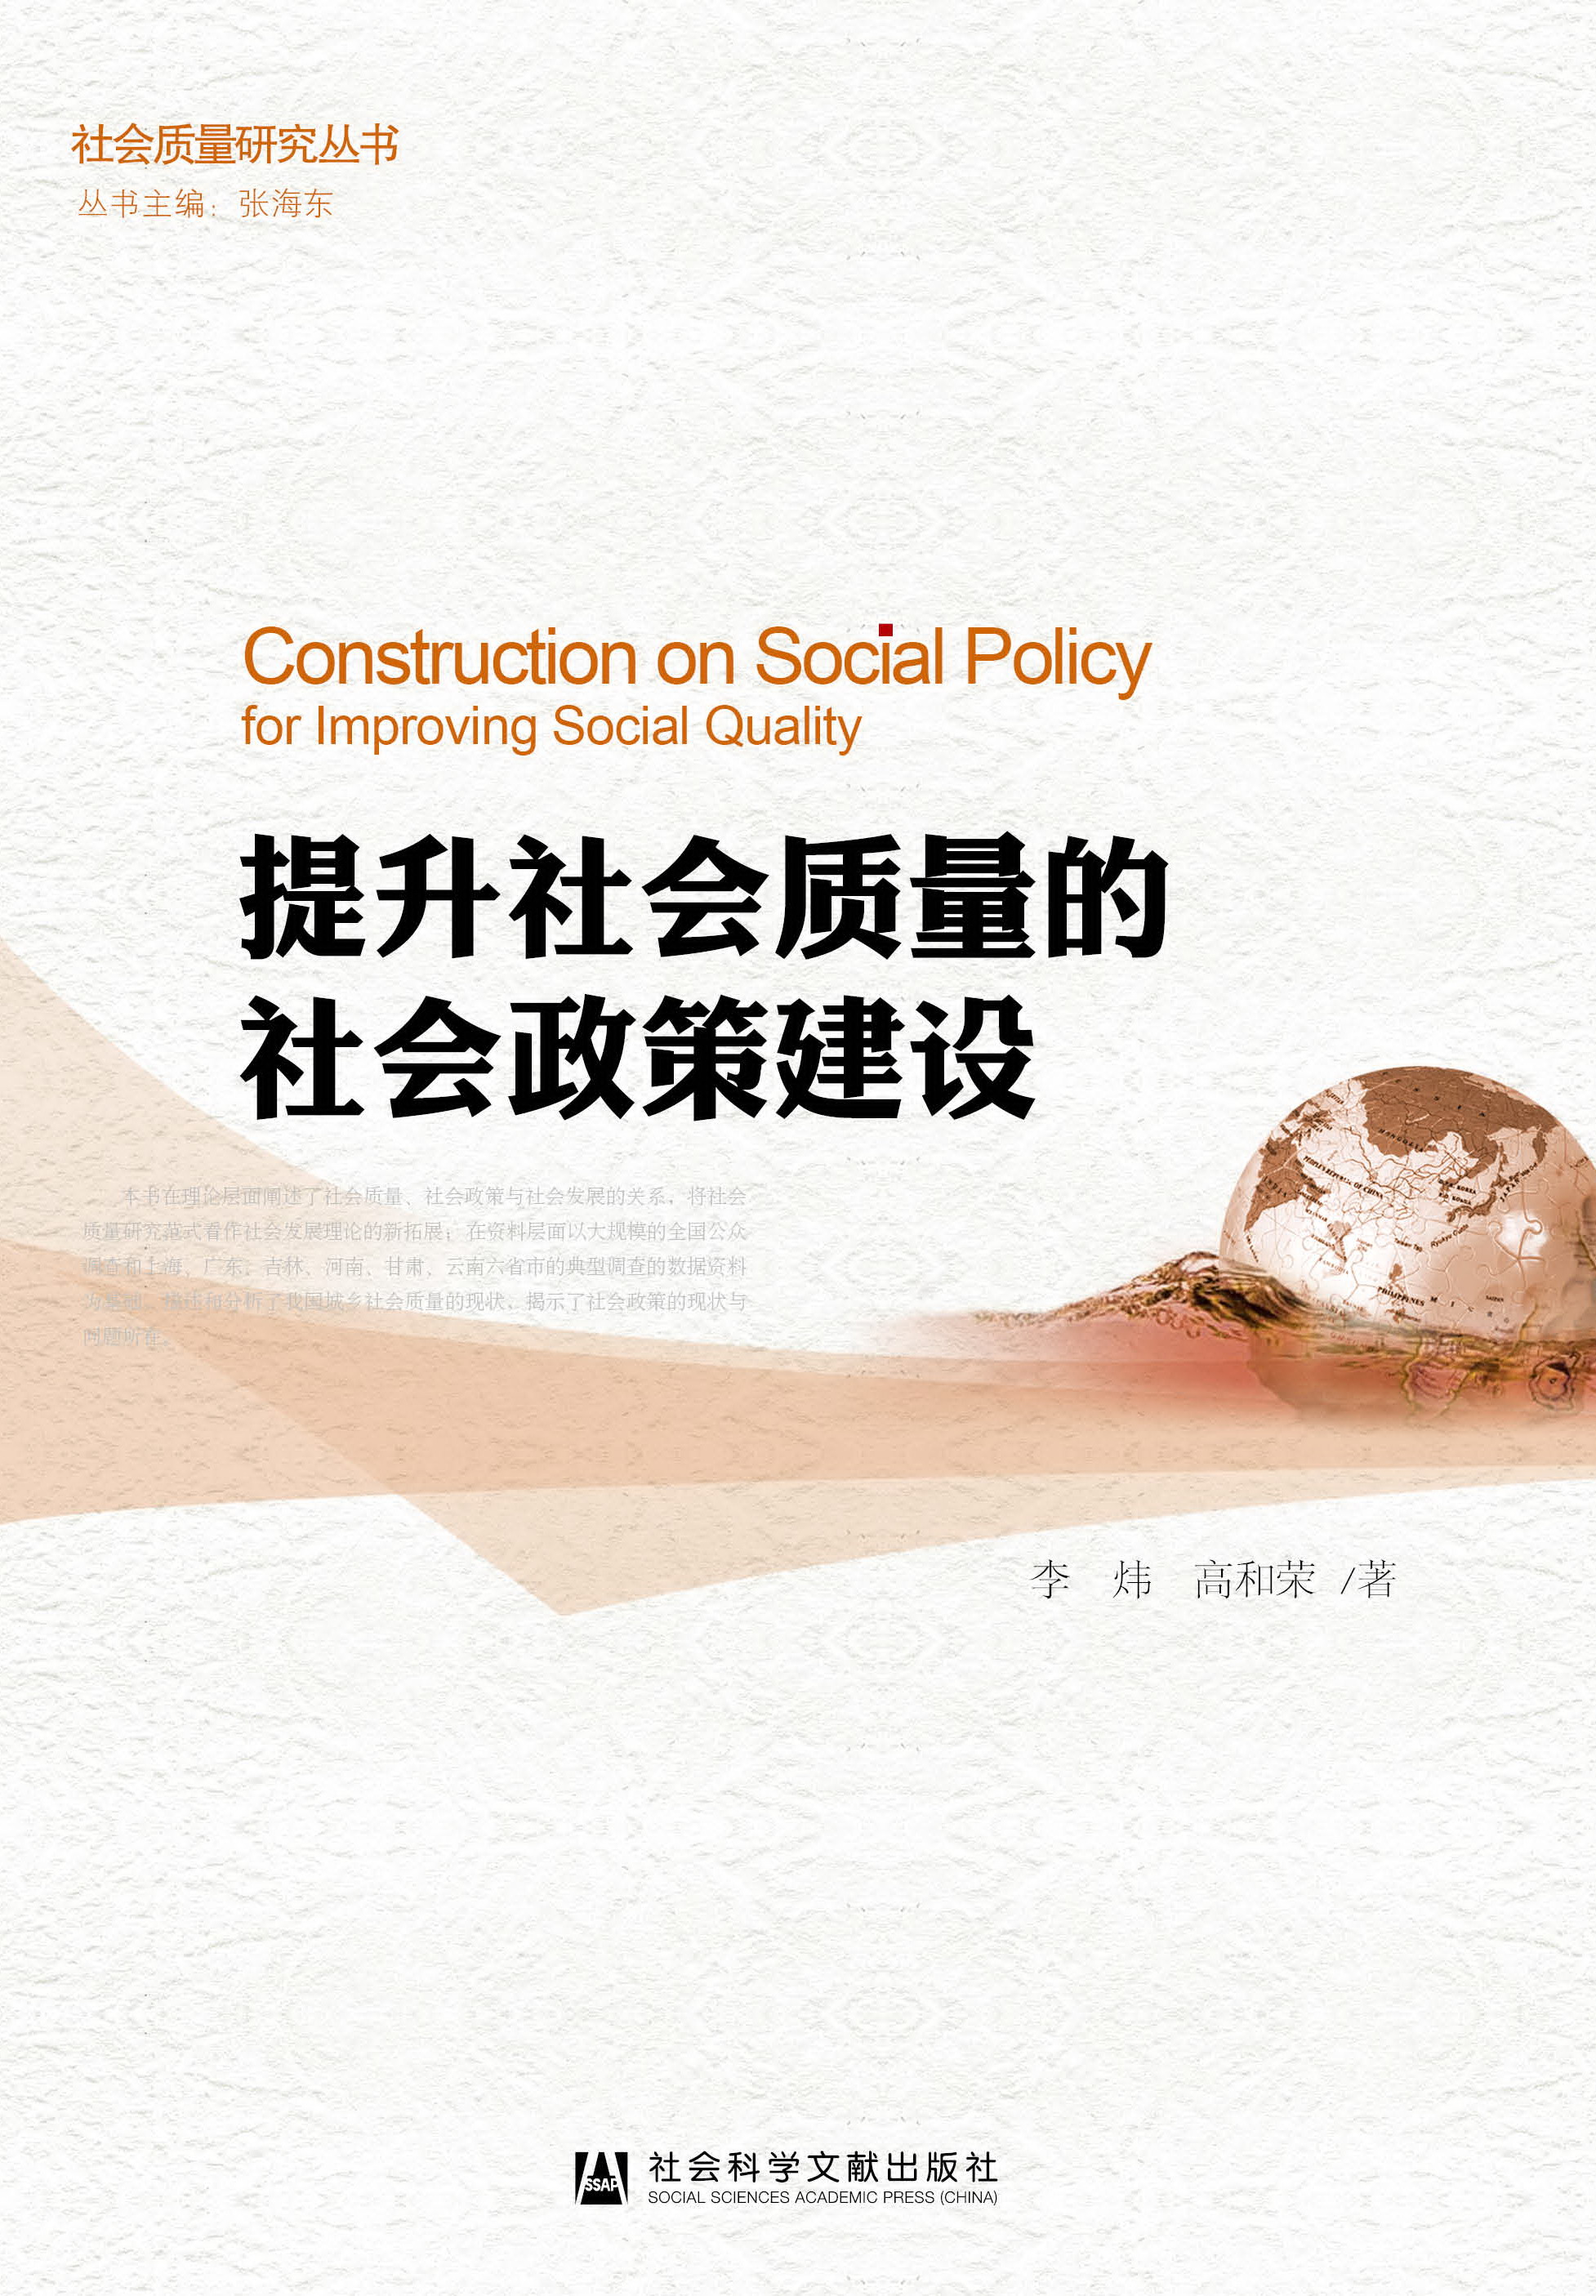 提升社会质量的社会政策建设